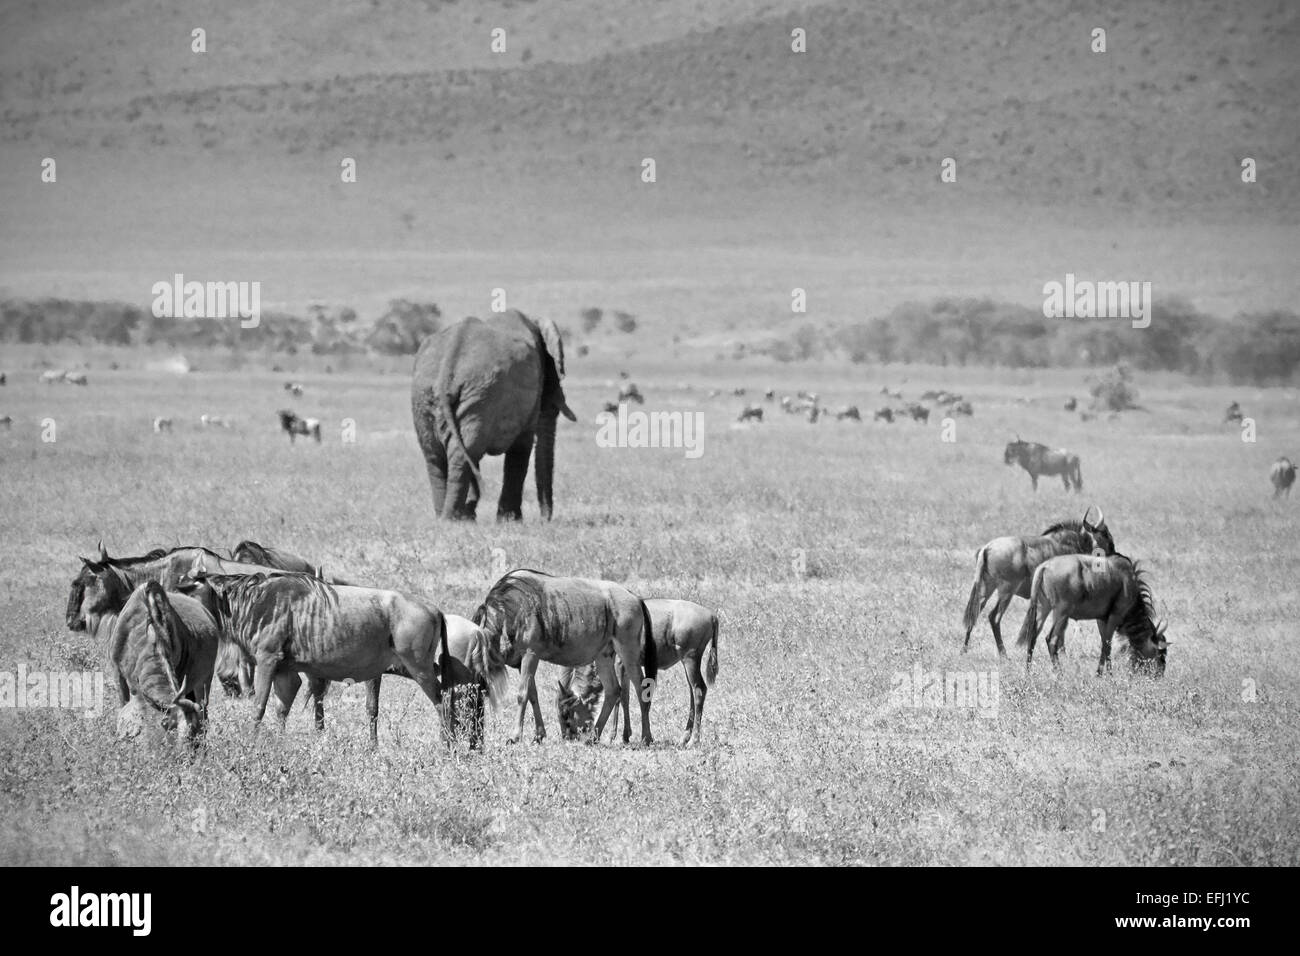 Image en noir et blanc d'un éléphant d'Afrique, Loxodonta africana, marcher au milieu d'un troupeau d'wilebeest Connochaete, bleu Banque D'Images